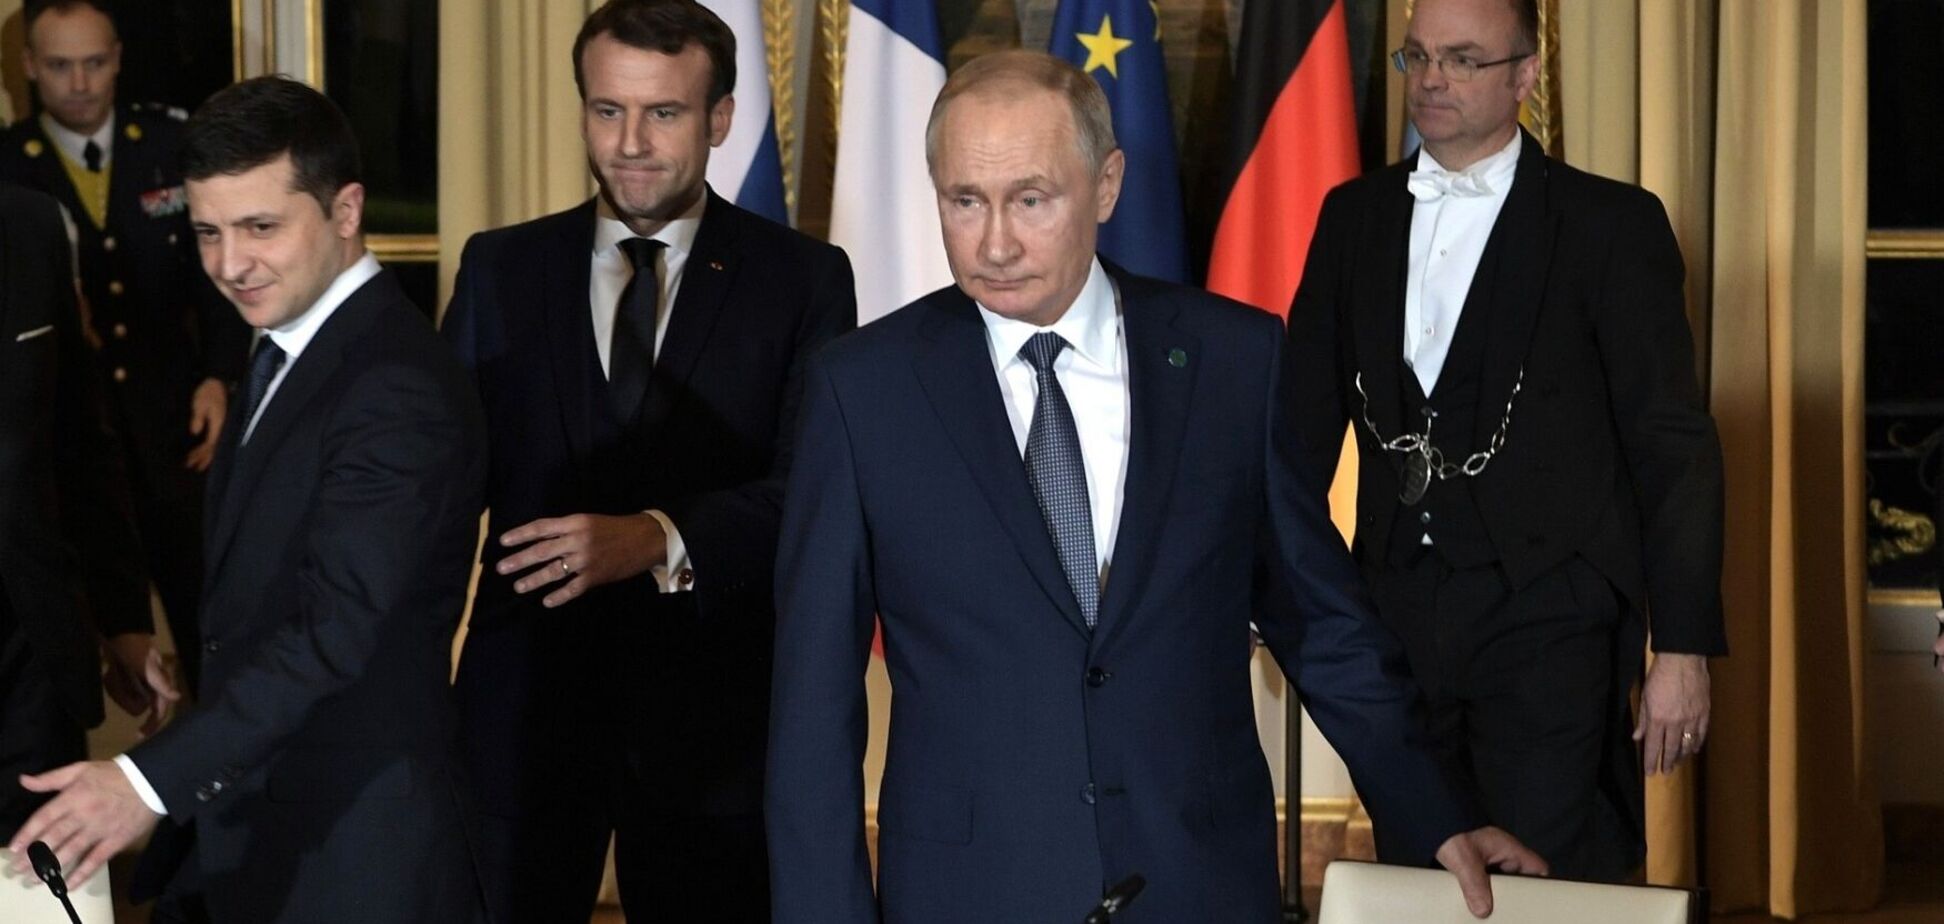 Володимир Зеленський і Володимир Путін під час зустрічі в Нормандському форматі в Парижі в 2019 році